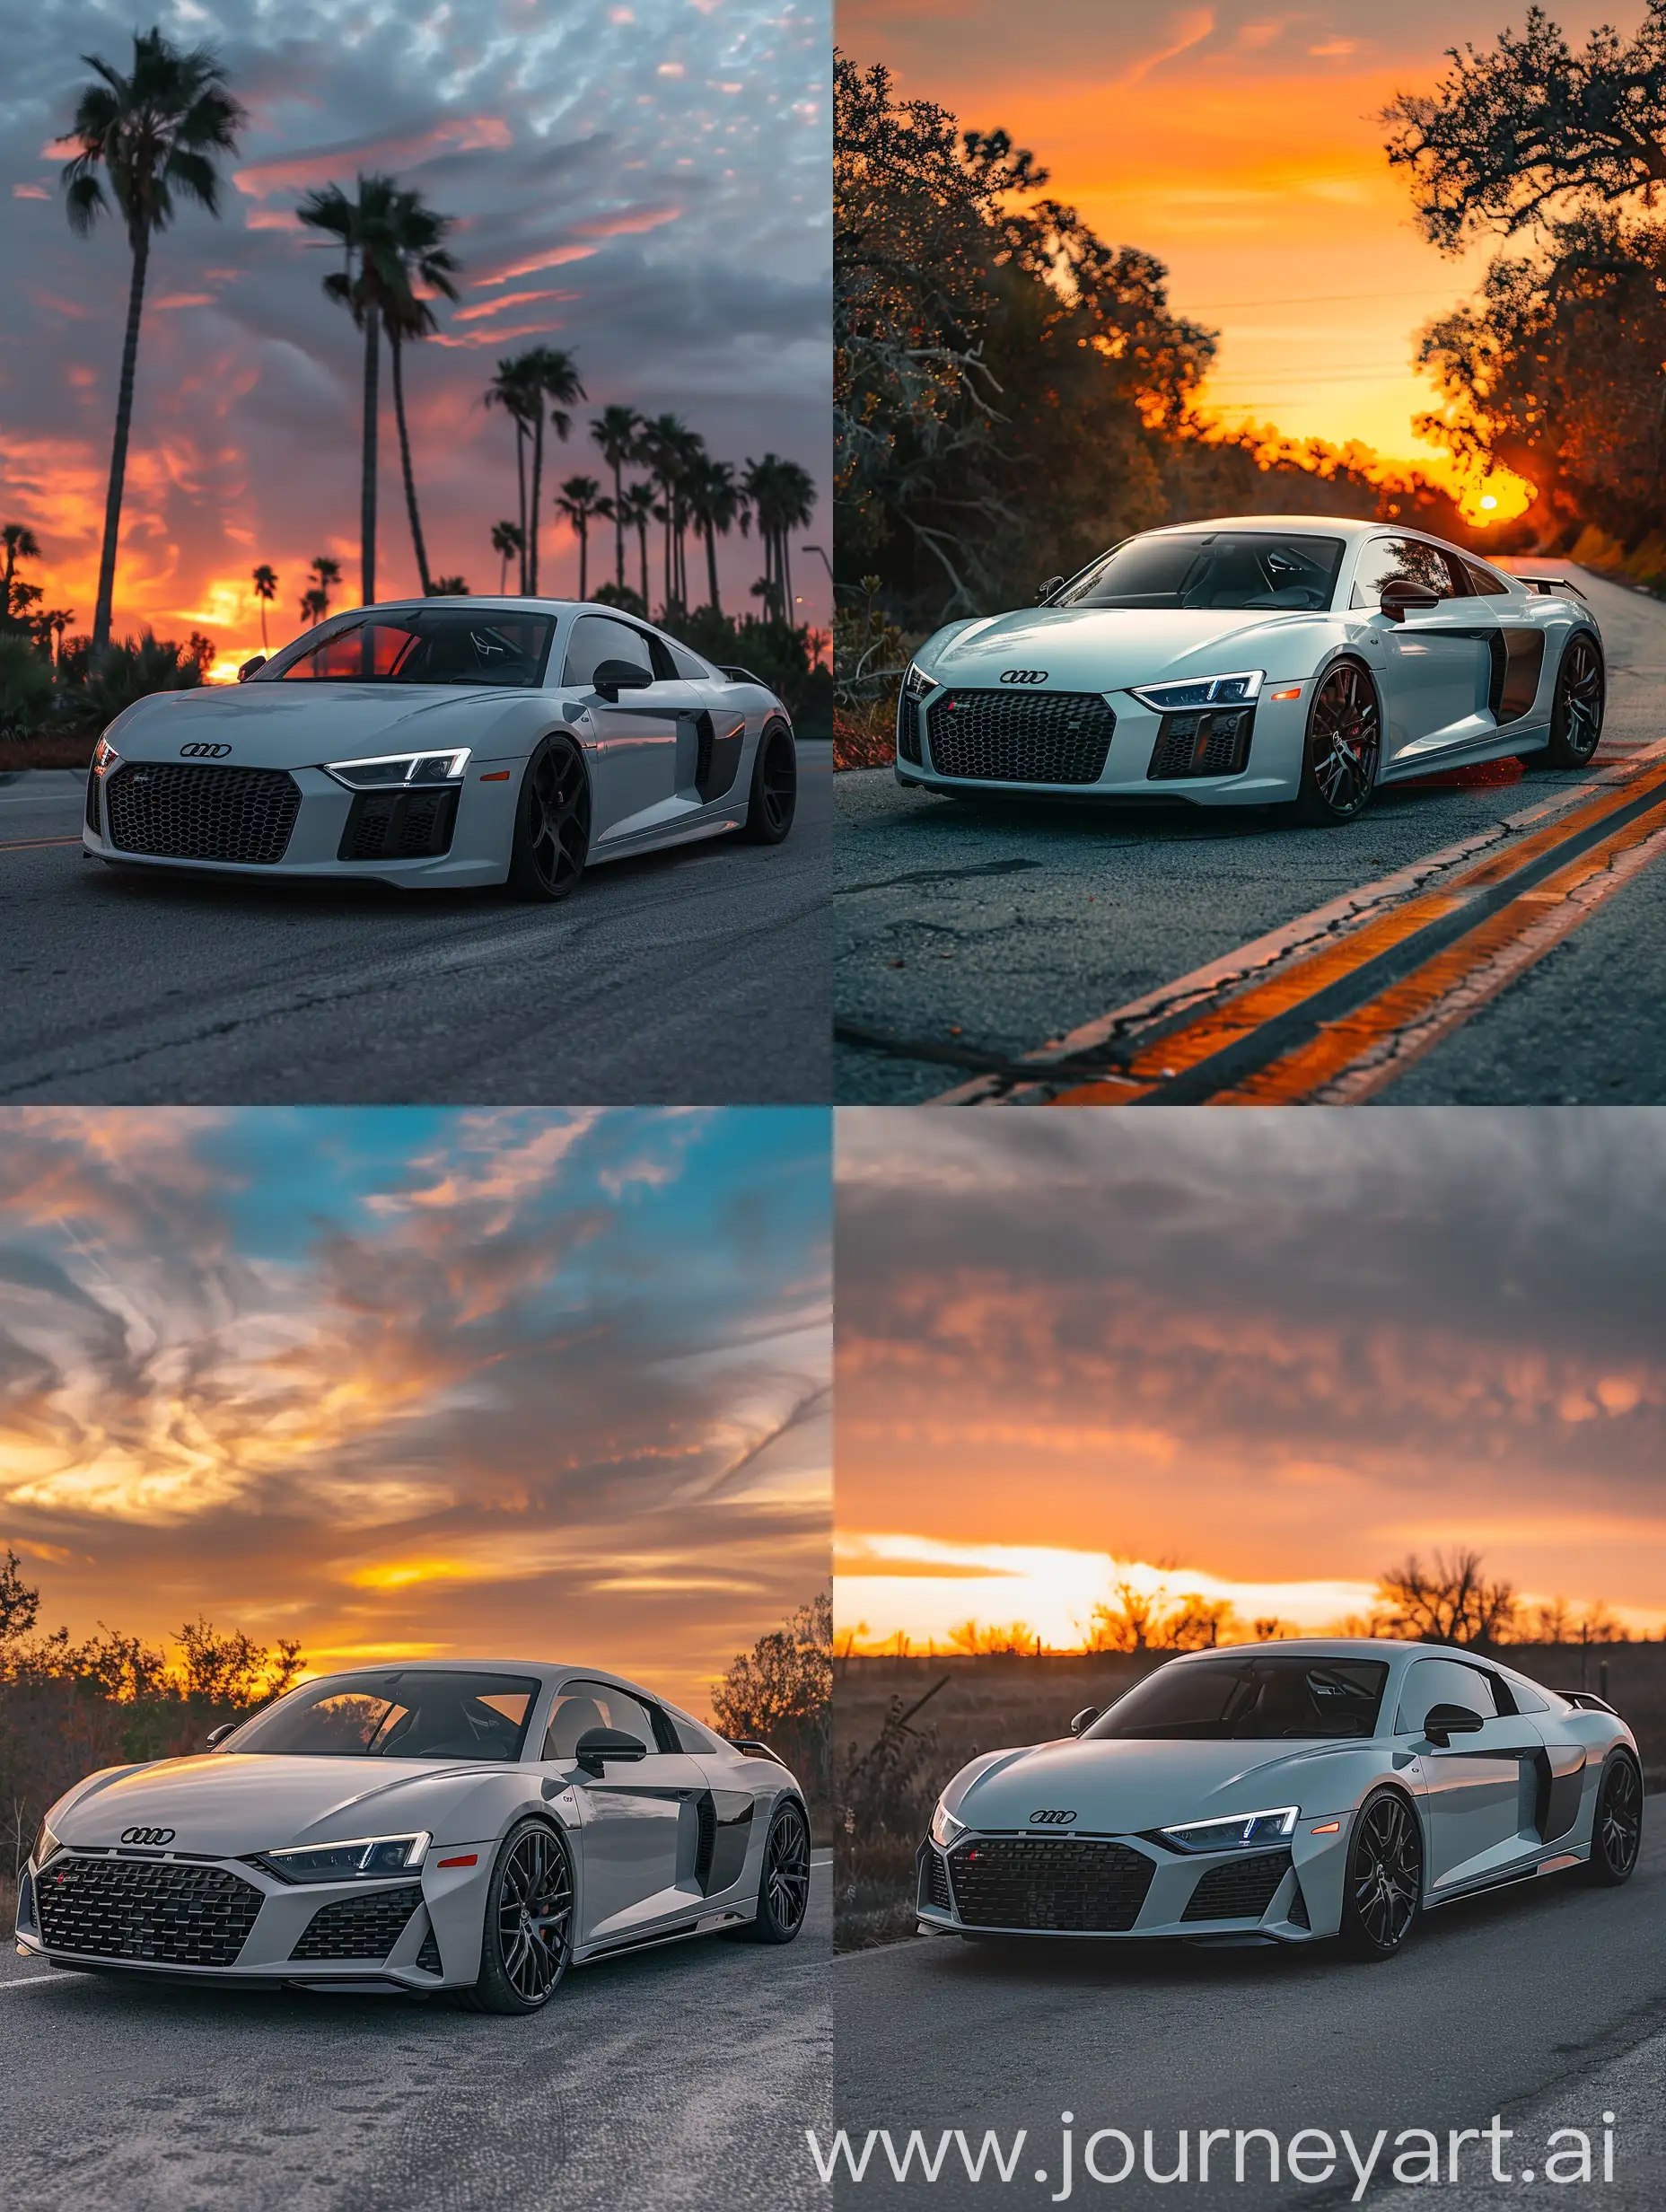 Audi-R8-Matte-White-Nardo-Gray-Sunset-Wallpaper-Instagram-Style